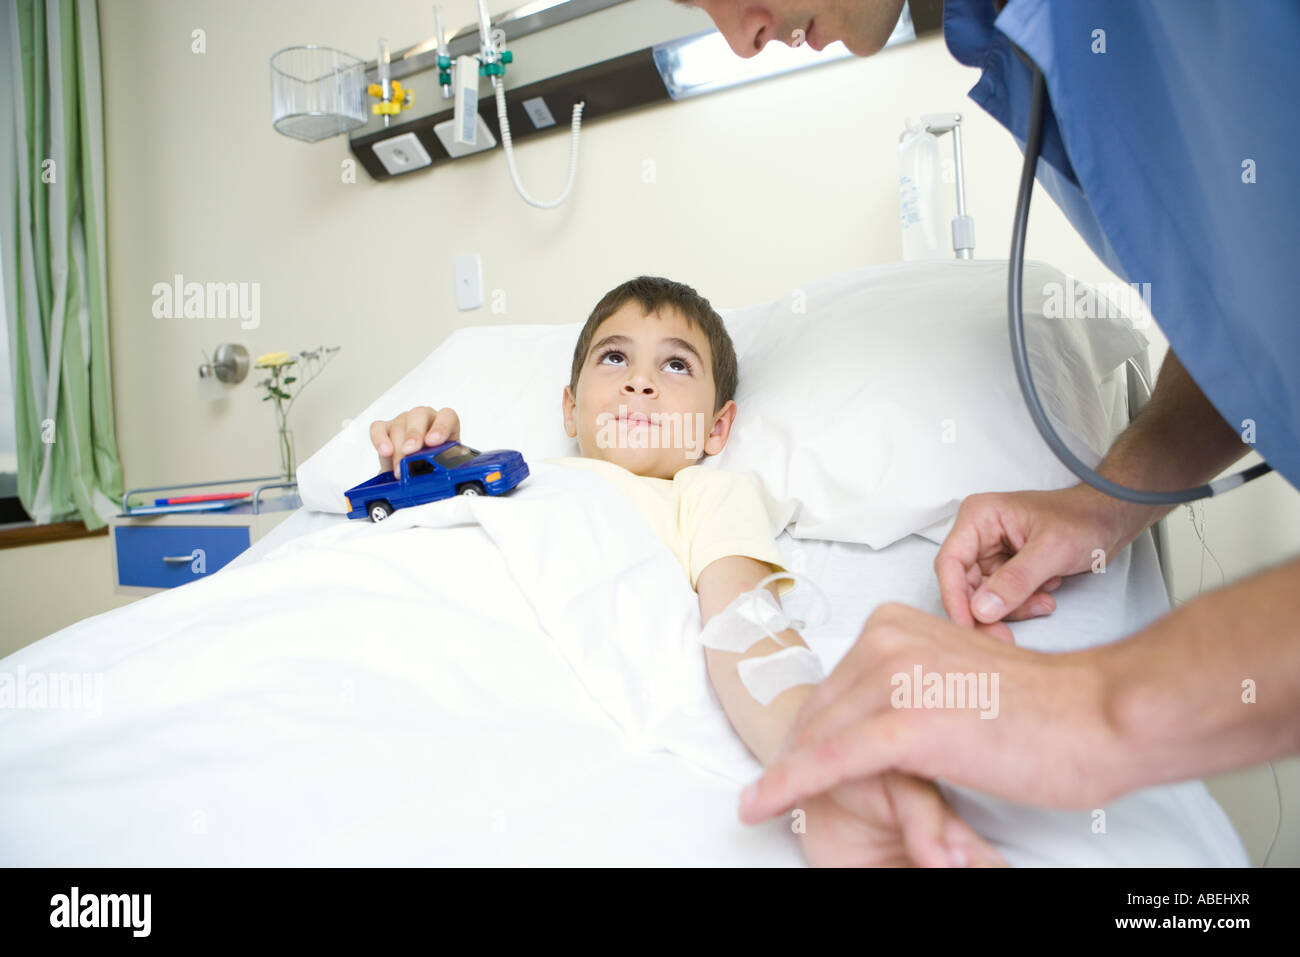 Junge im Krankenhausbett Spielzeugauto zu halten, während Intern Puls überprüft Stockfoto